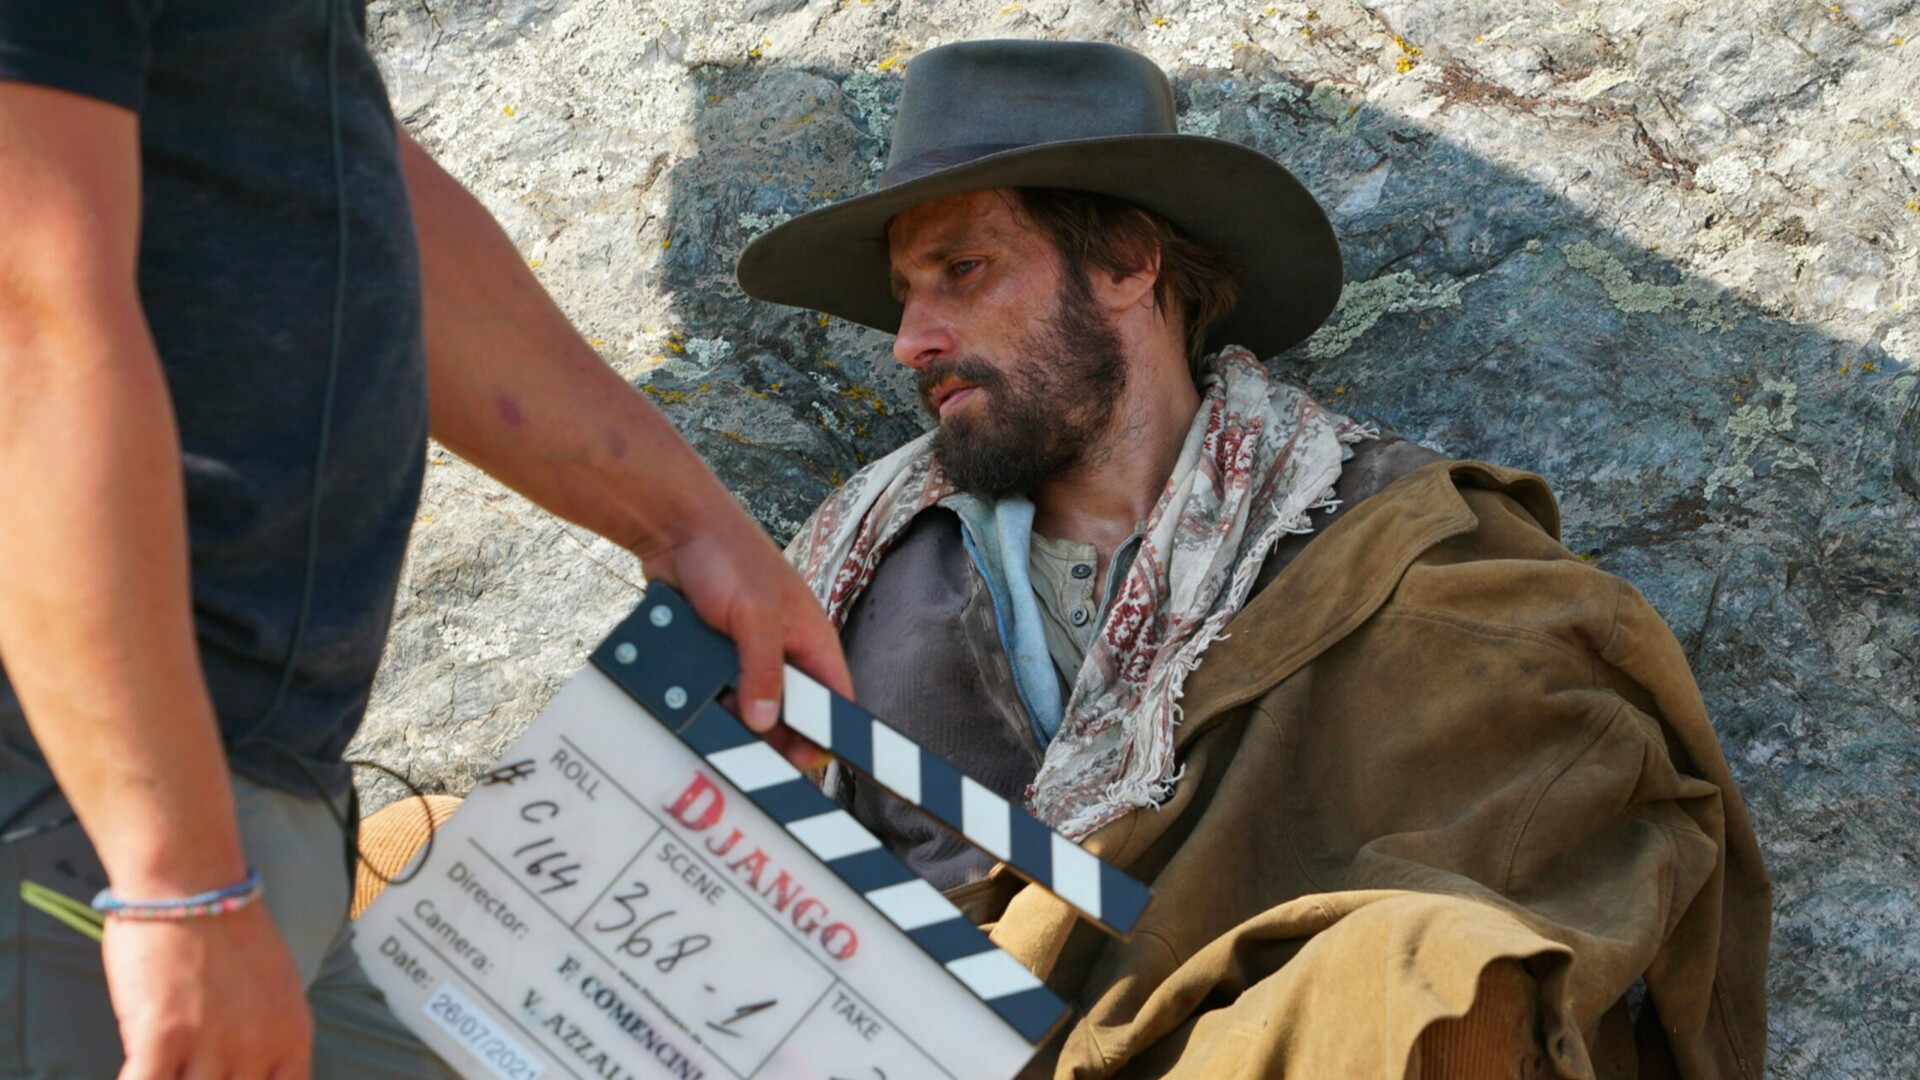 Immagine principale di: Serie tv: da Django a Yellowstone, il ritorno del western in 4 serie da non